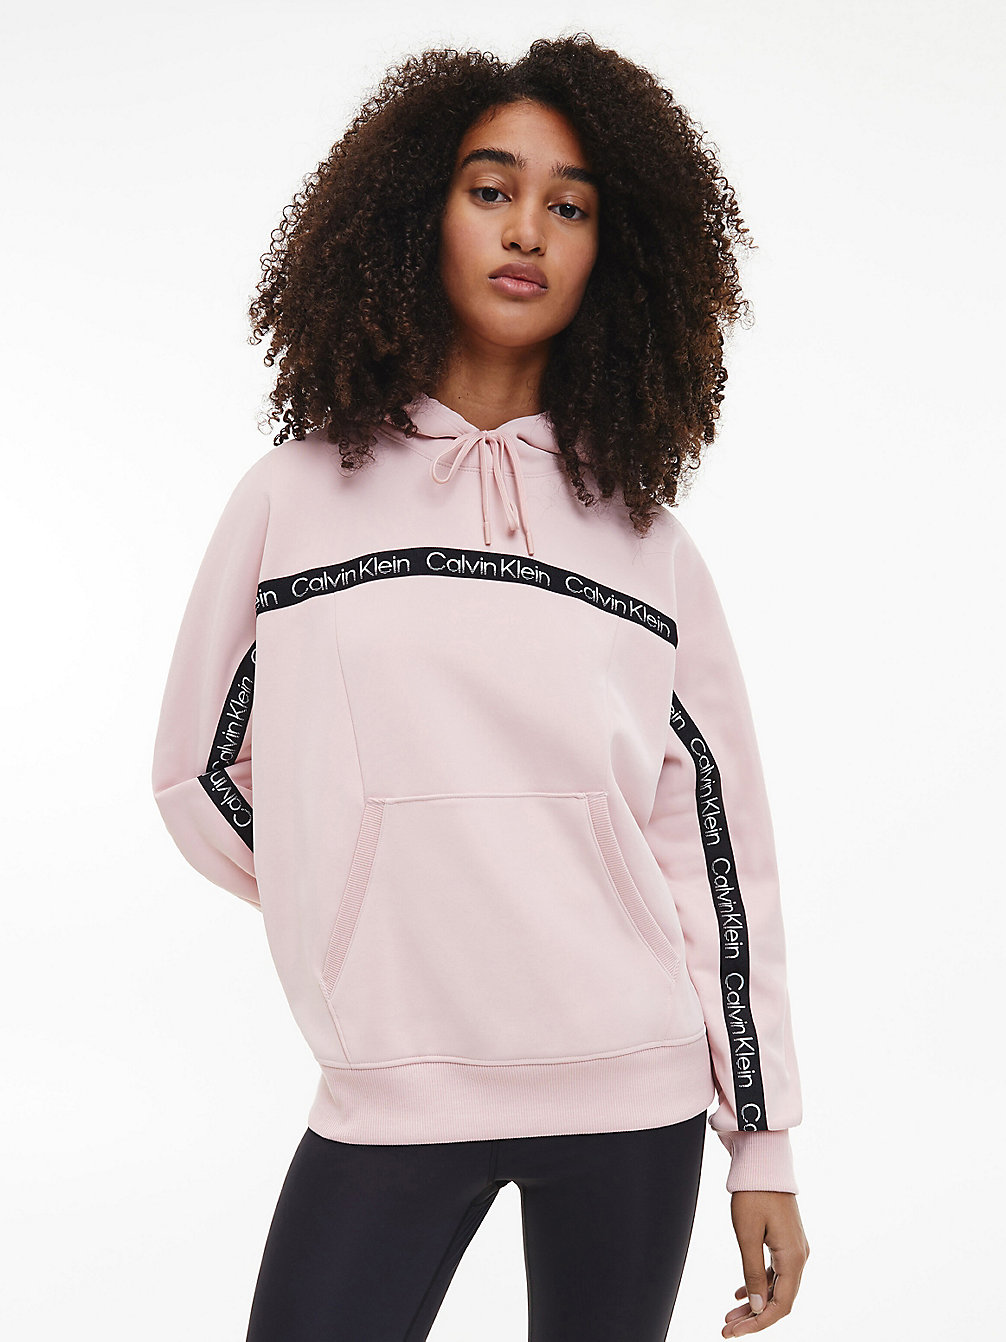 SILVER PINK Sweat-Shirt À Capuche En Polaire Avec Logo undefined femmes Calvin Klein